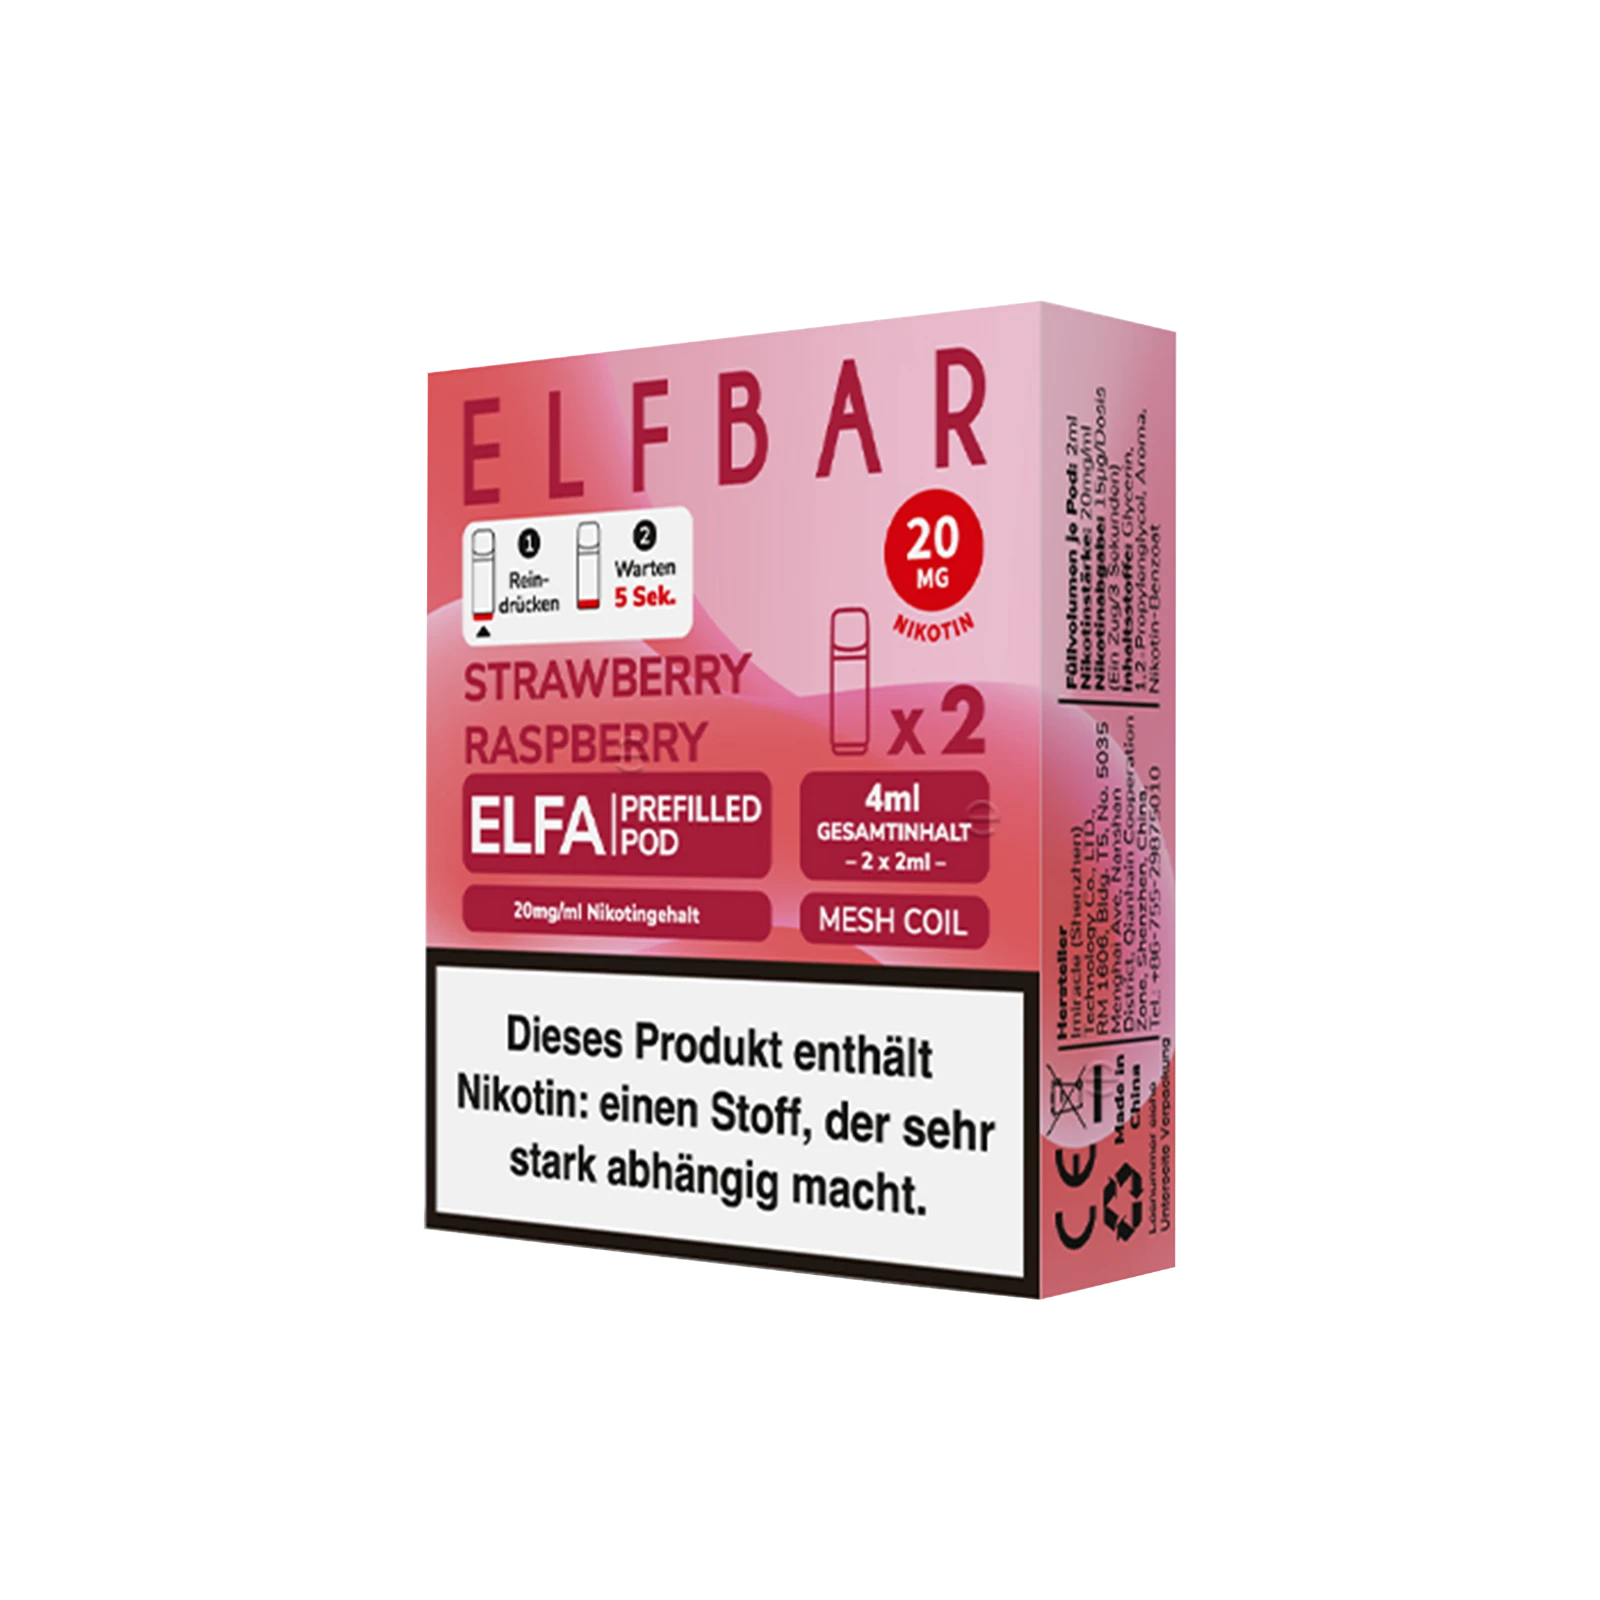 Elf Bar ELFA Prefilled Pod Strawberry Raspberry | Neue Liquid Sorten1